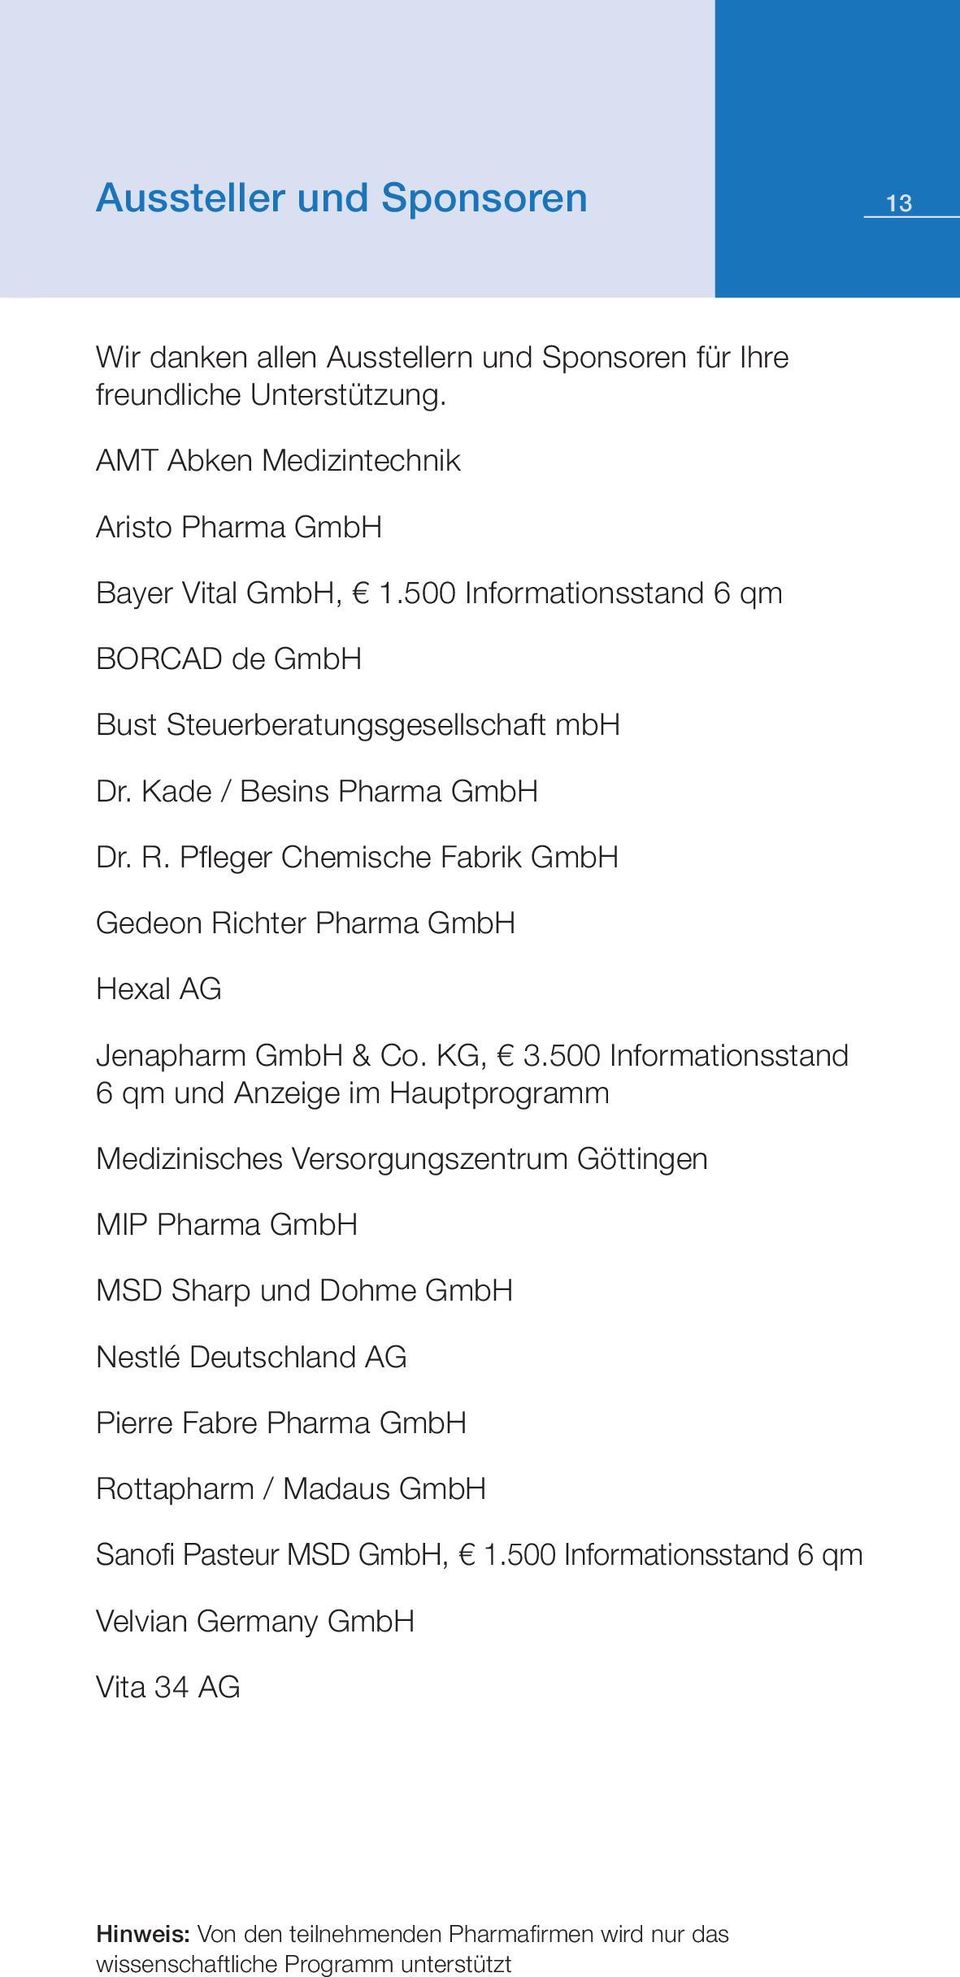 Pfl eger Chemische Fabrik GmbH Gedeon Richter Pharma GmbH Hexal AG Jenapharm GmbH & Co. KG, 3.